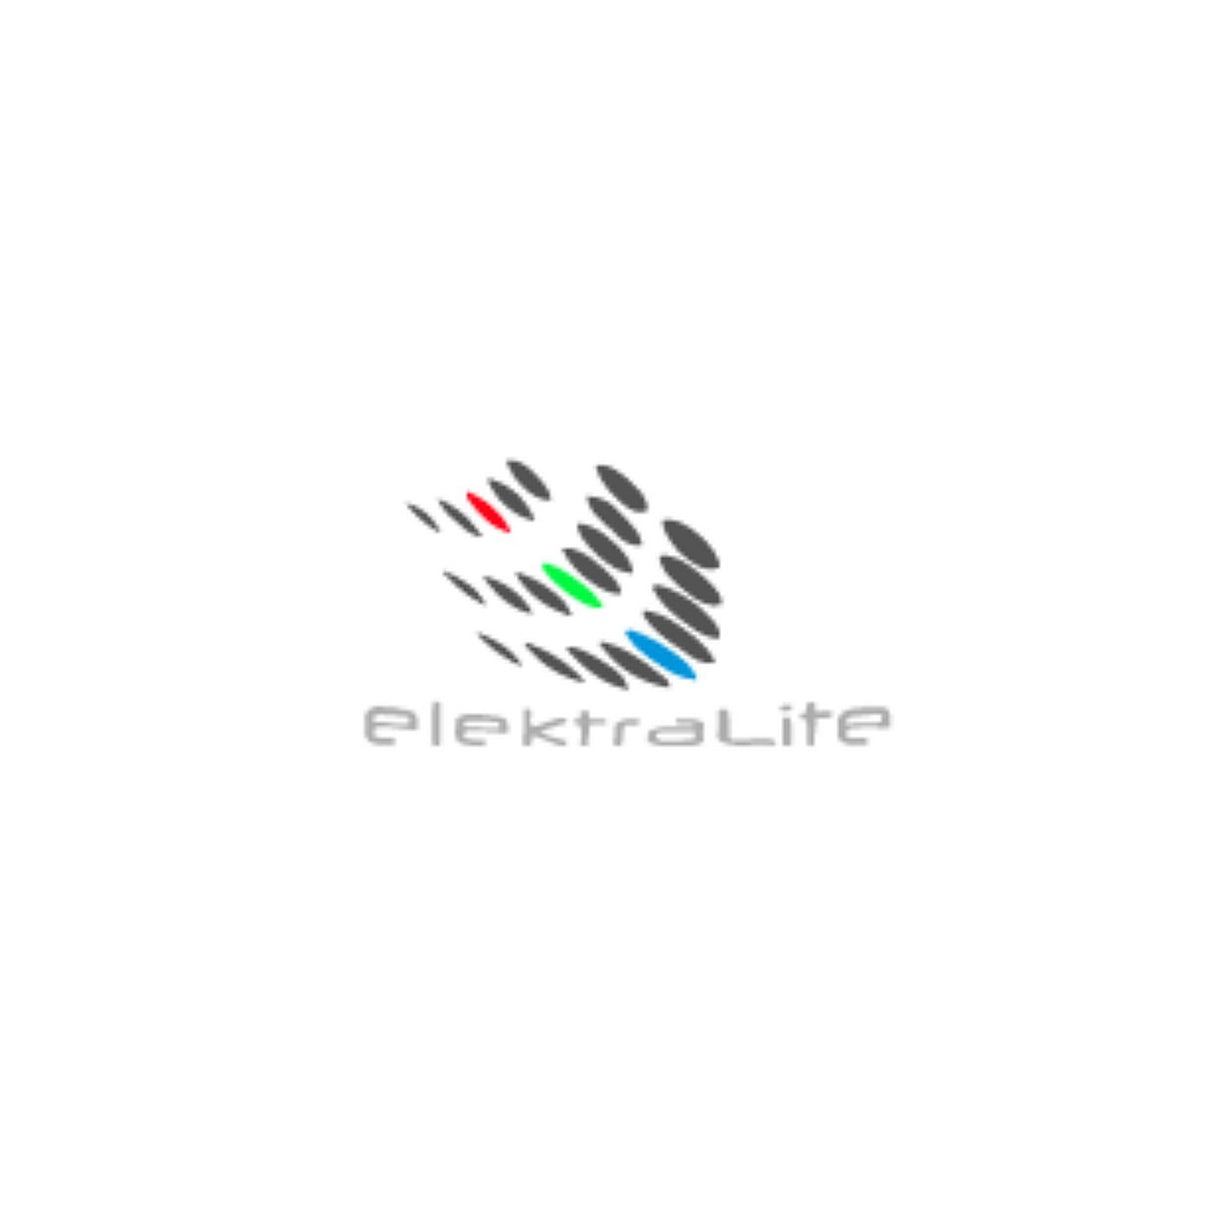 ElektraLite Power Cable Endcap | IP68 Power Cable Endcap ELE724-TP